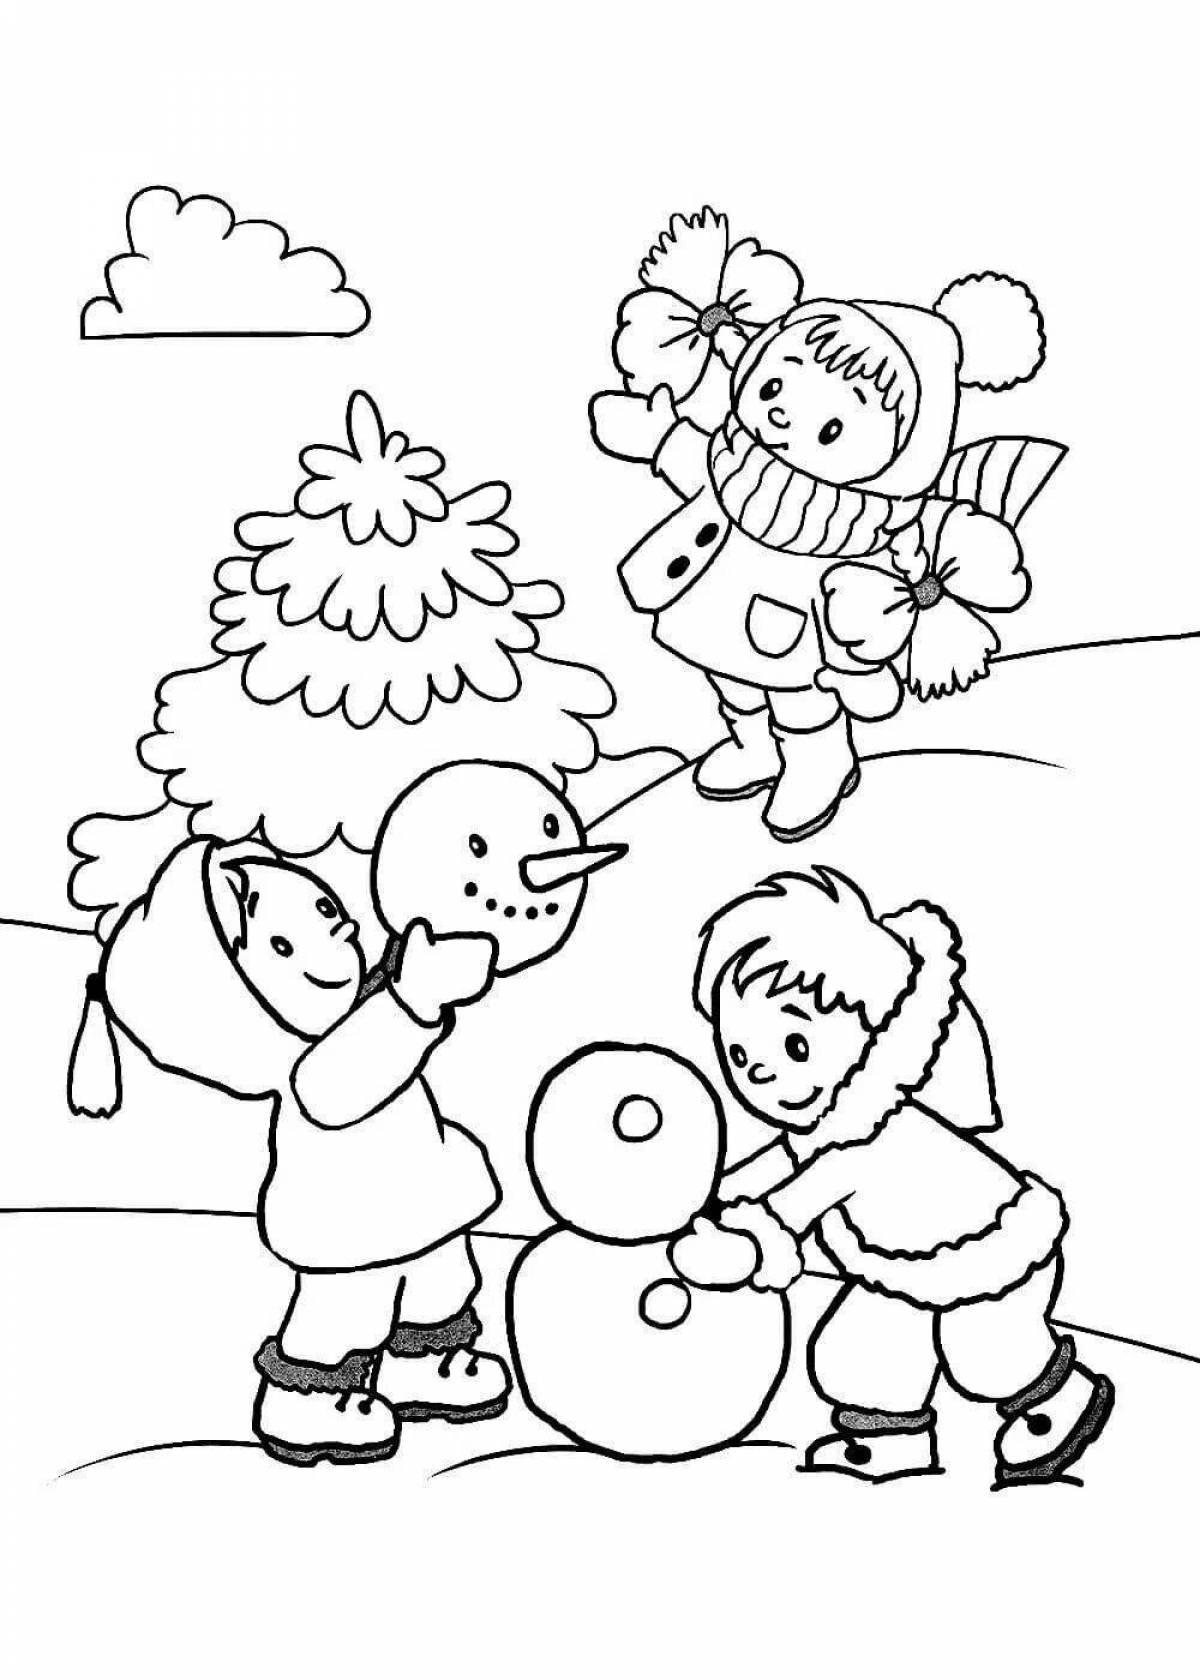 Blissful winter fun coloring book